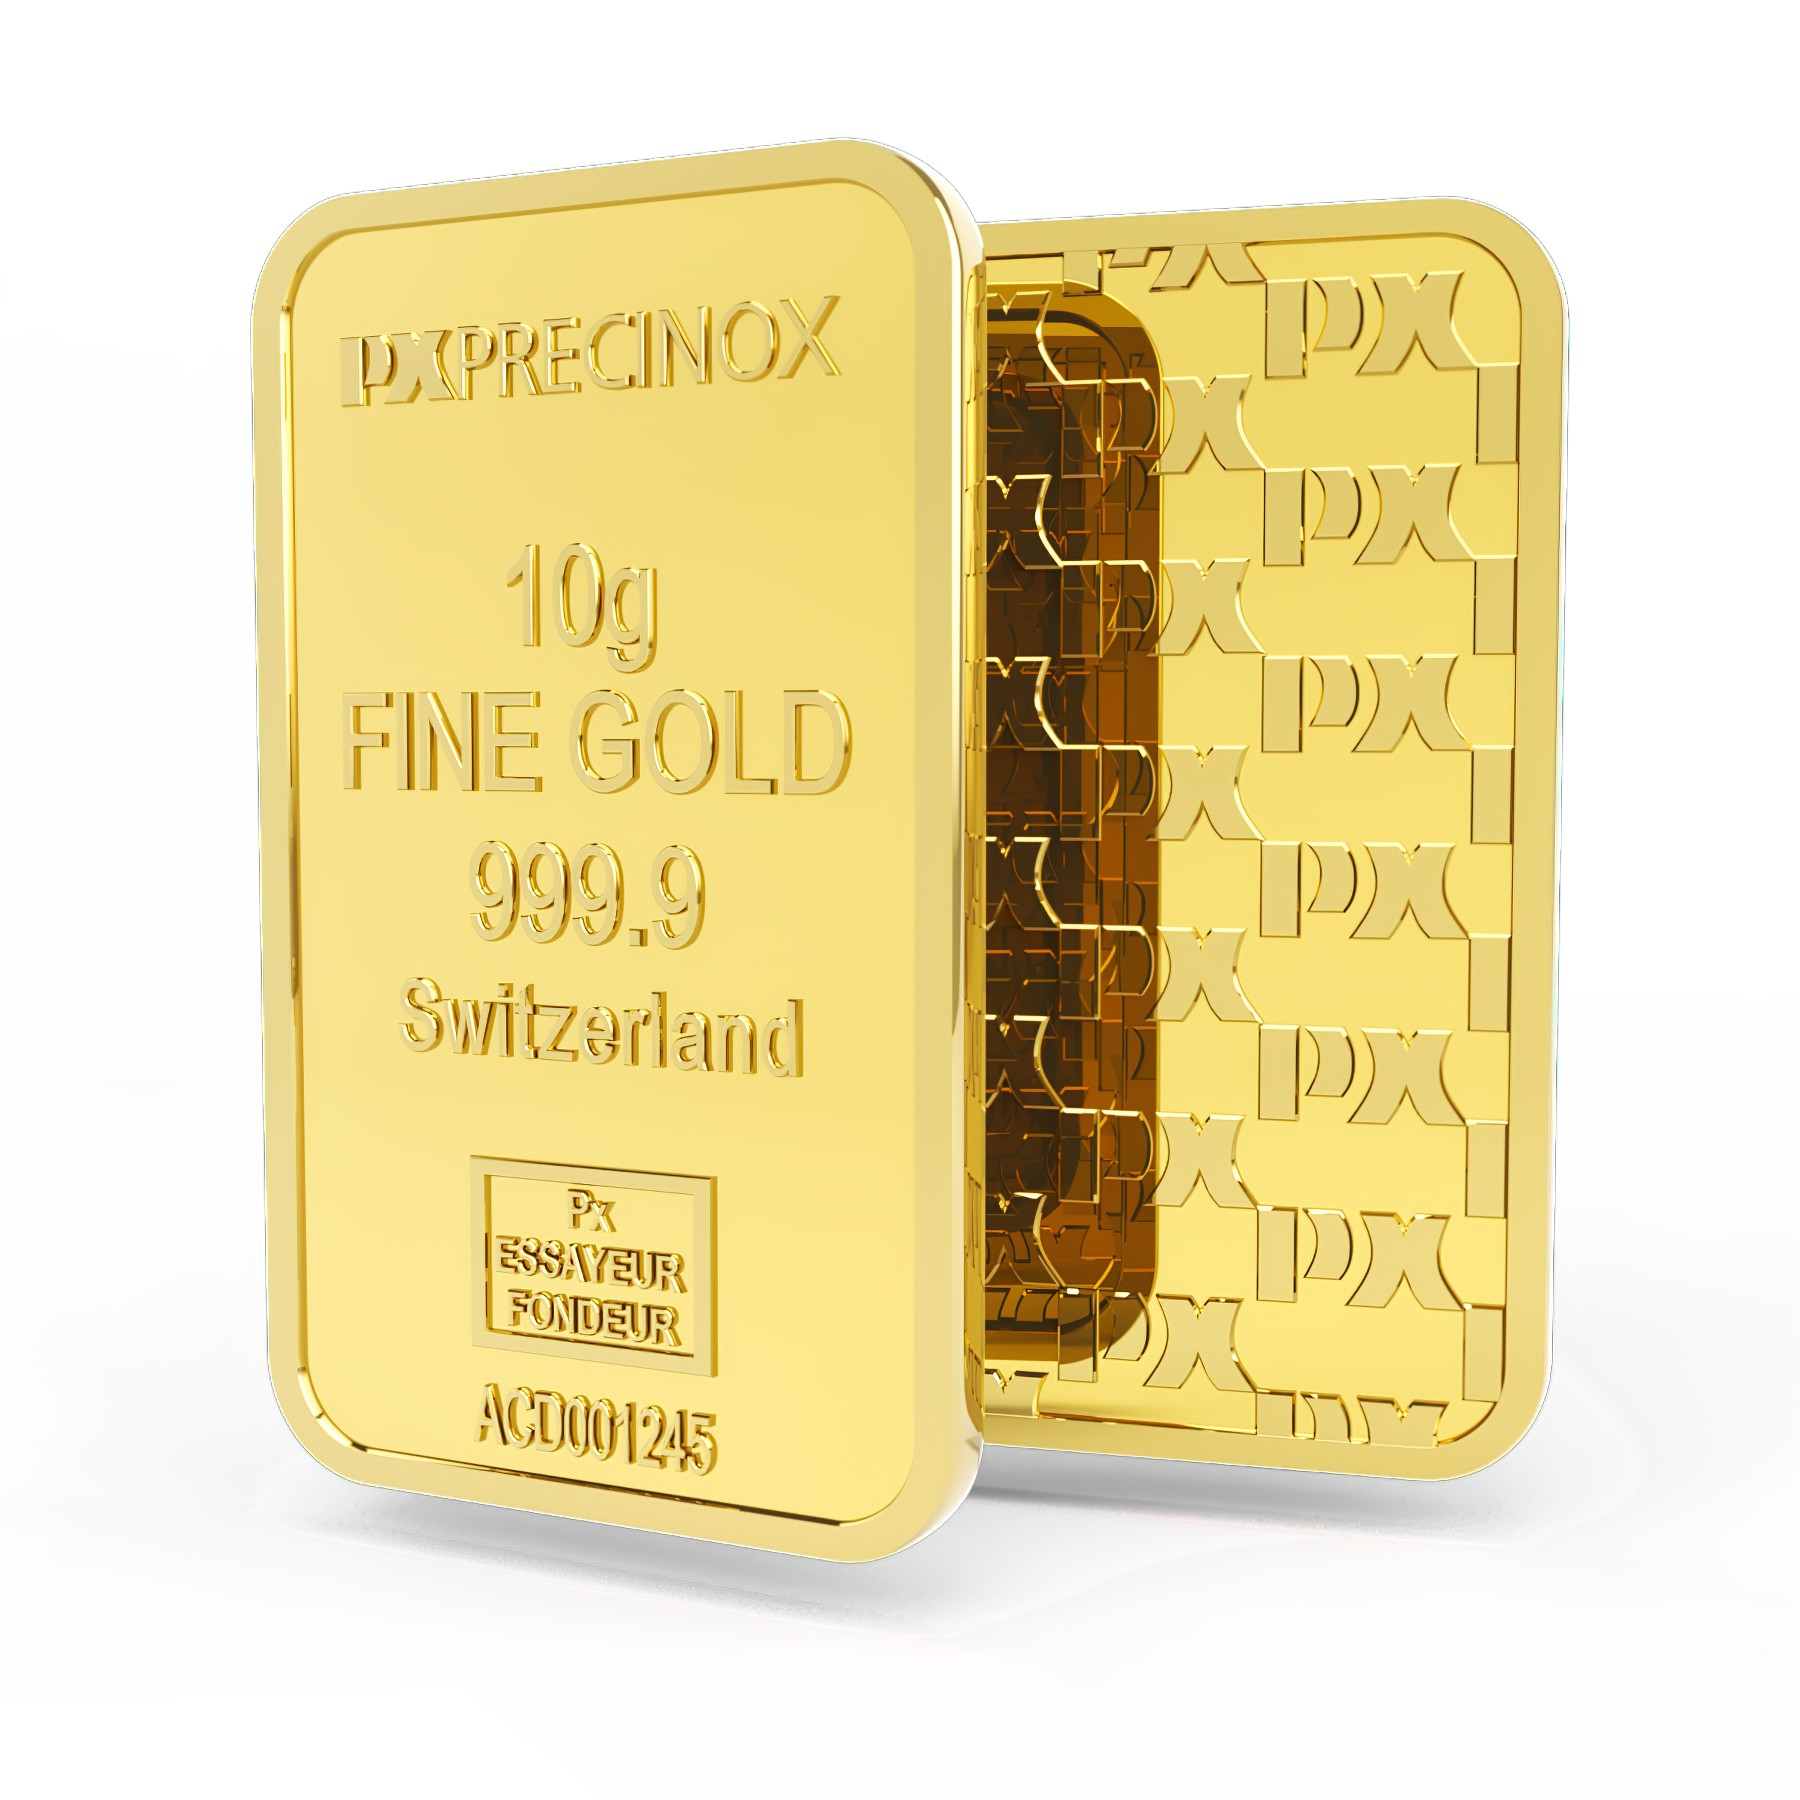 Sztabka złota 10g, Szwajcaria, Fine Gold 999.9